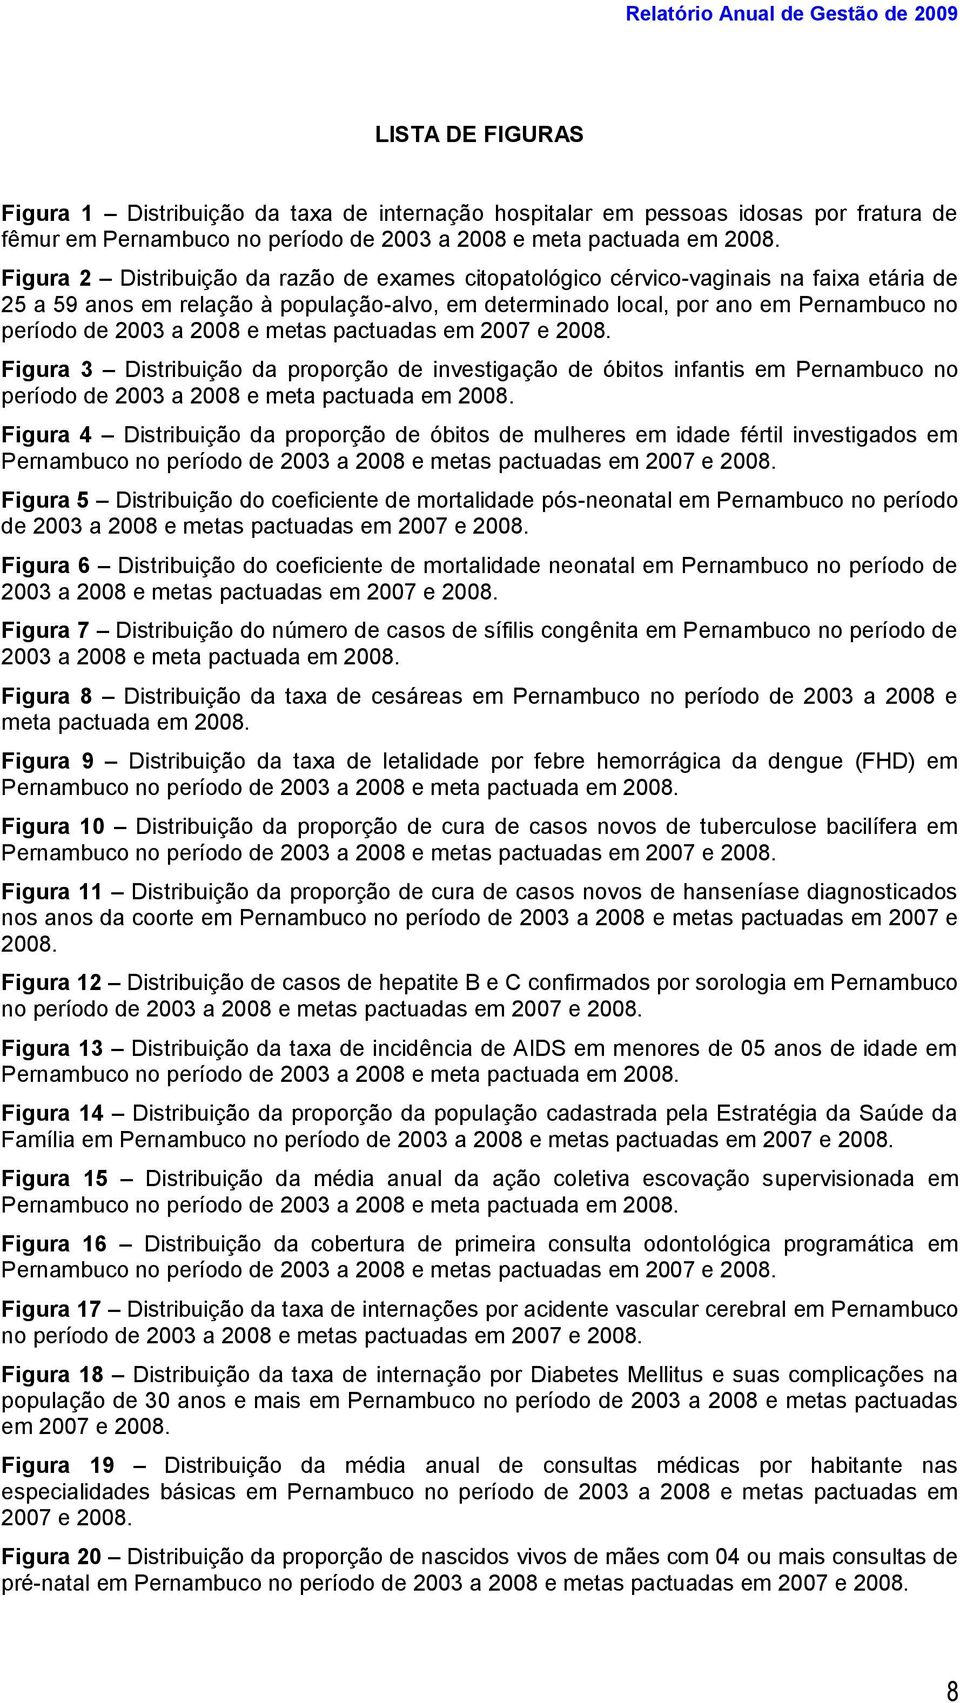 Figura 2 Distribuição da razão de exames citopatológico cérvico-vaginais na faixa etária de 25 a 59 anos em relação à população-alvo, em determinado local, por ano em Pernambuco no período de 2003 a